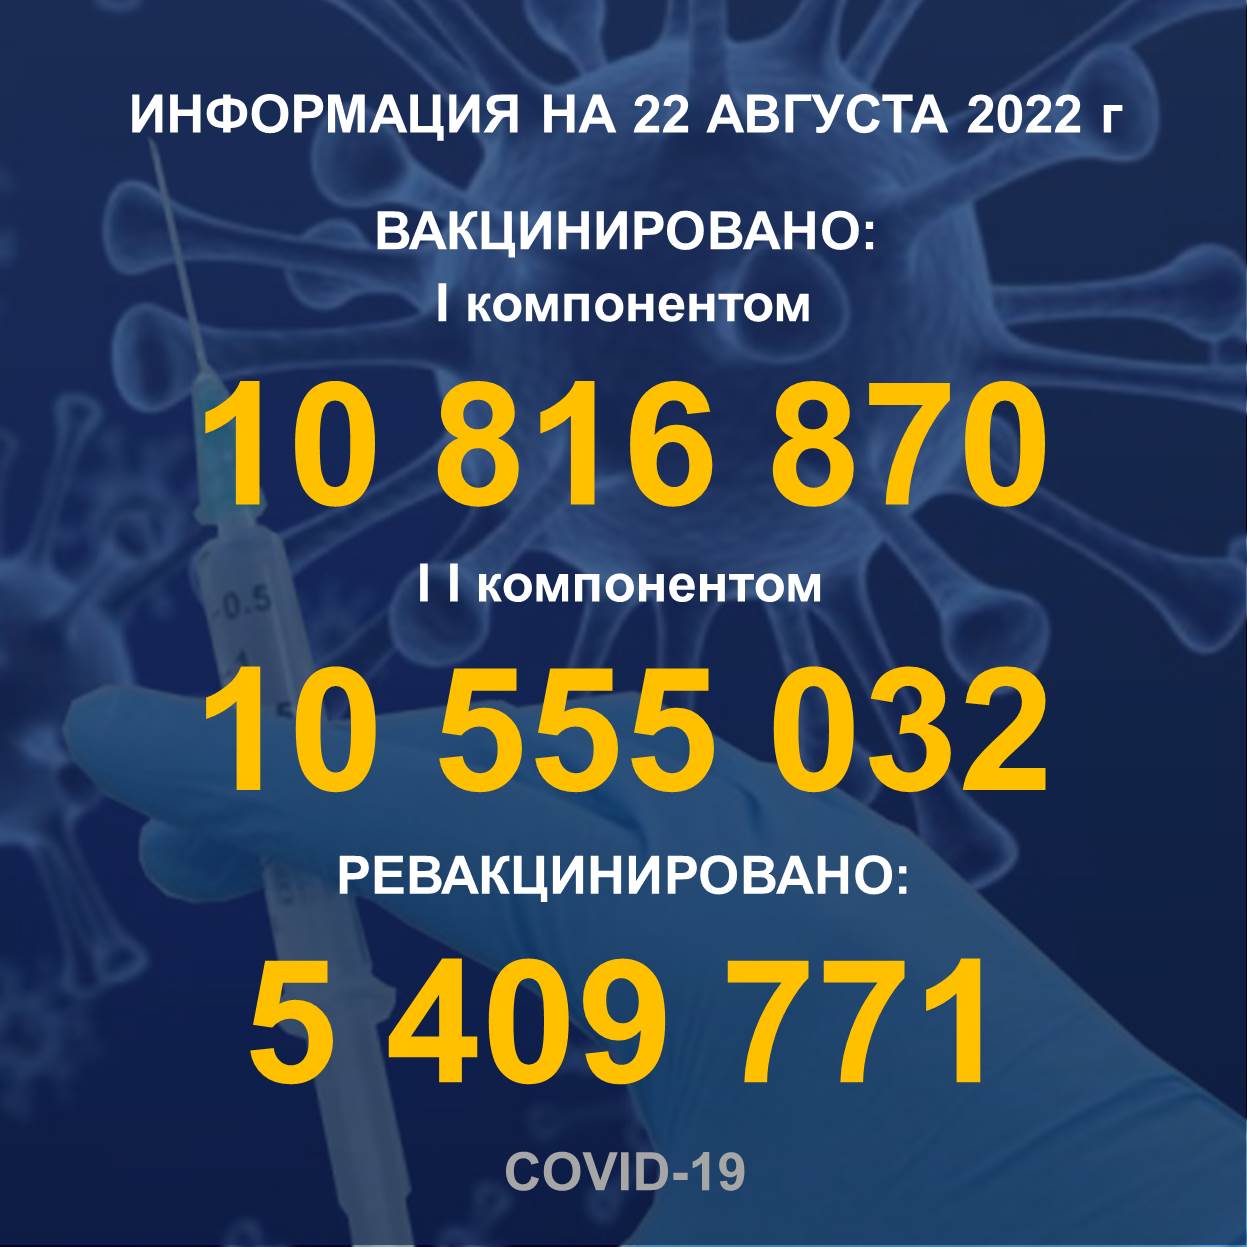 I компонентом 10 816 870 человек провакцинировано в Казахстане на 22.08.2022 г, II компонентом 10 555 032 человек. Ревакцинировано – 5 409 771